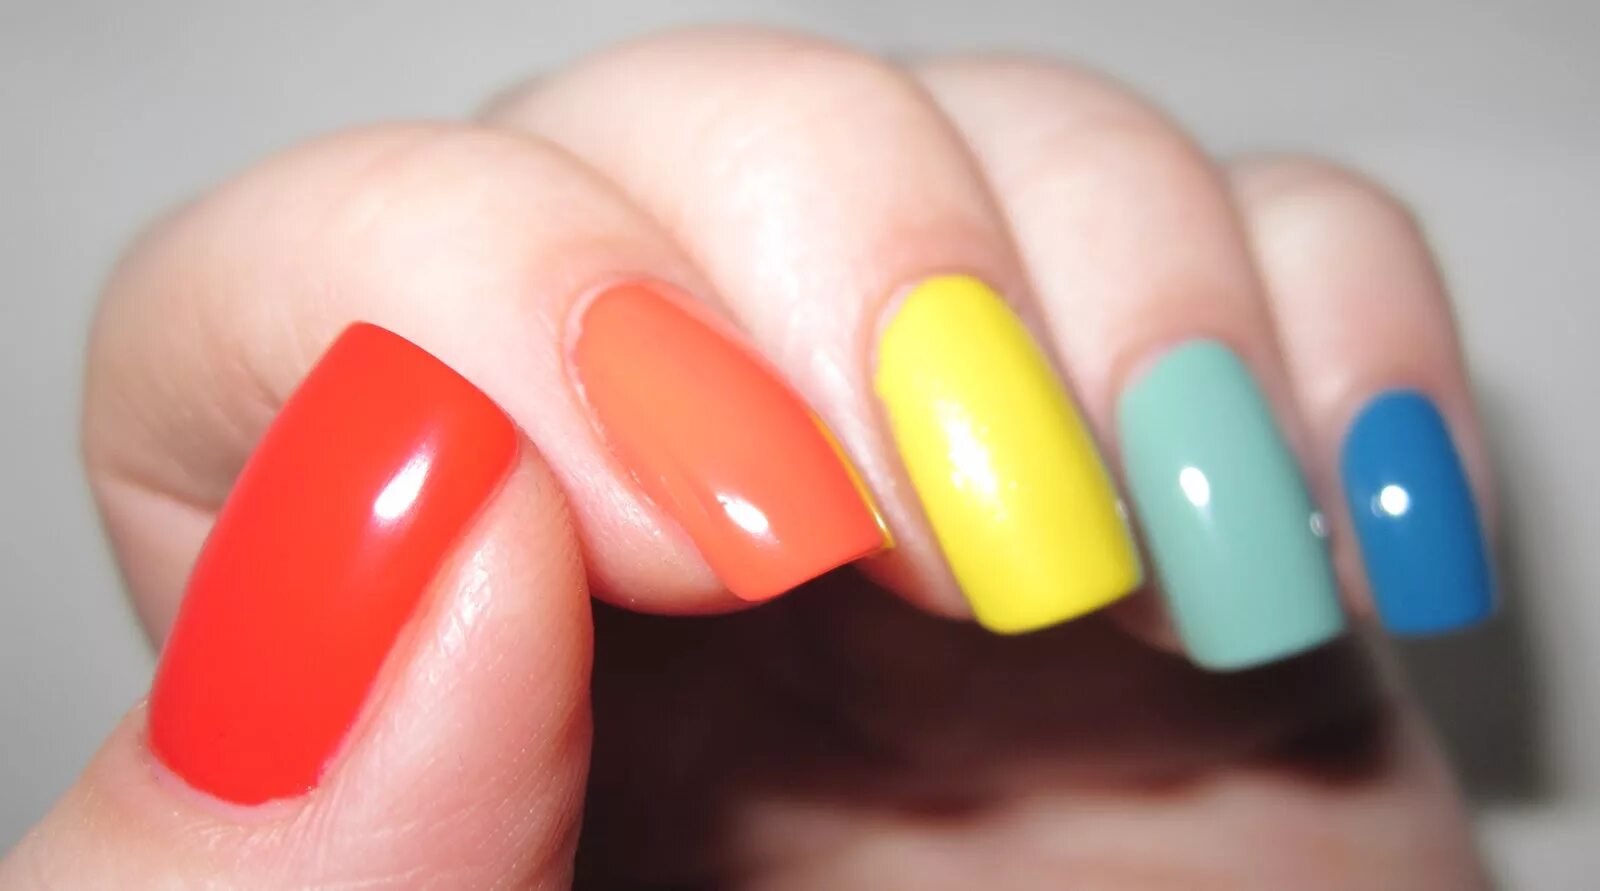 Ногти разного цвета. Разноцветный маникюр сочетание цветов. Накрашенные ногти. Красивый маникюр разными цветами. Можно накрасить лака